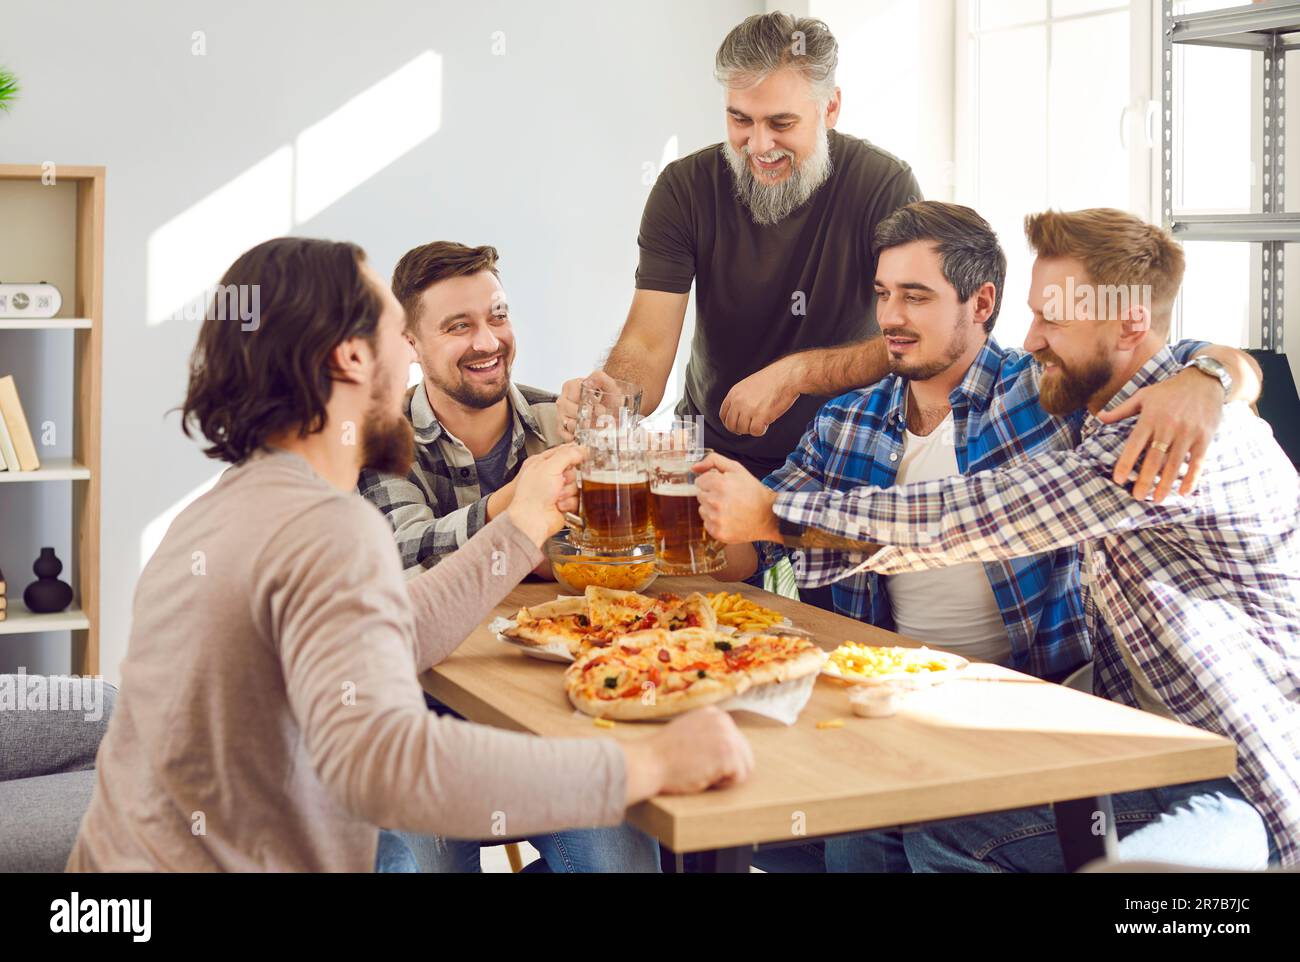 Groupe d'hommes heureux assis autour de la table, boire de la bière, manger de la pizza, et s'amuser Banque D'Images